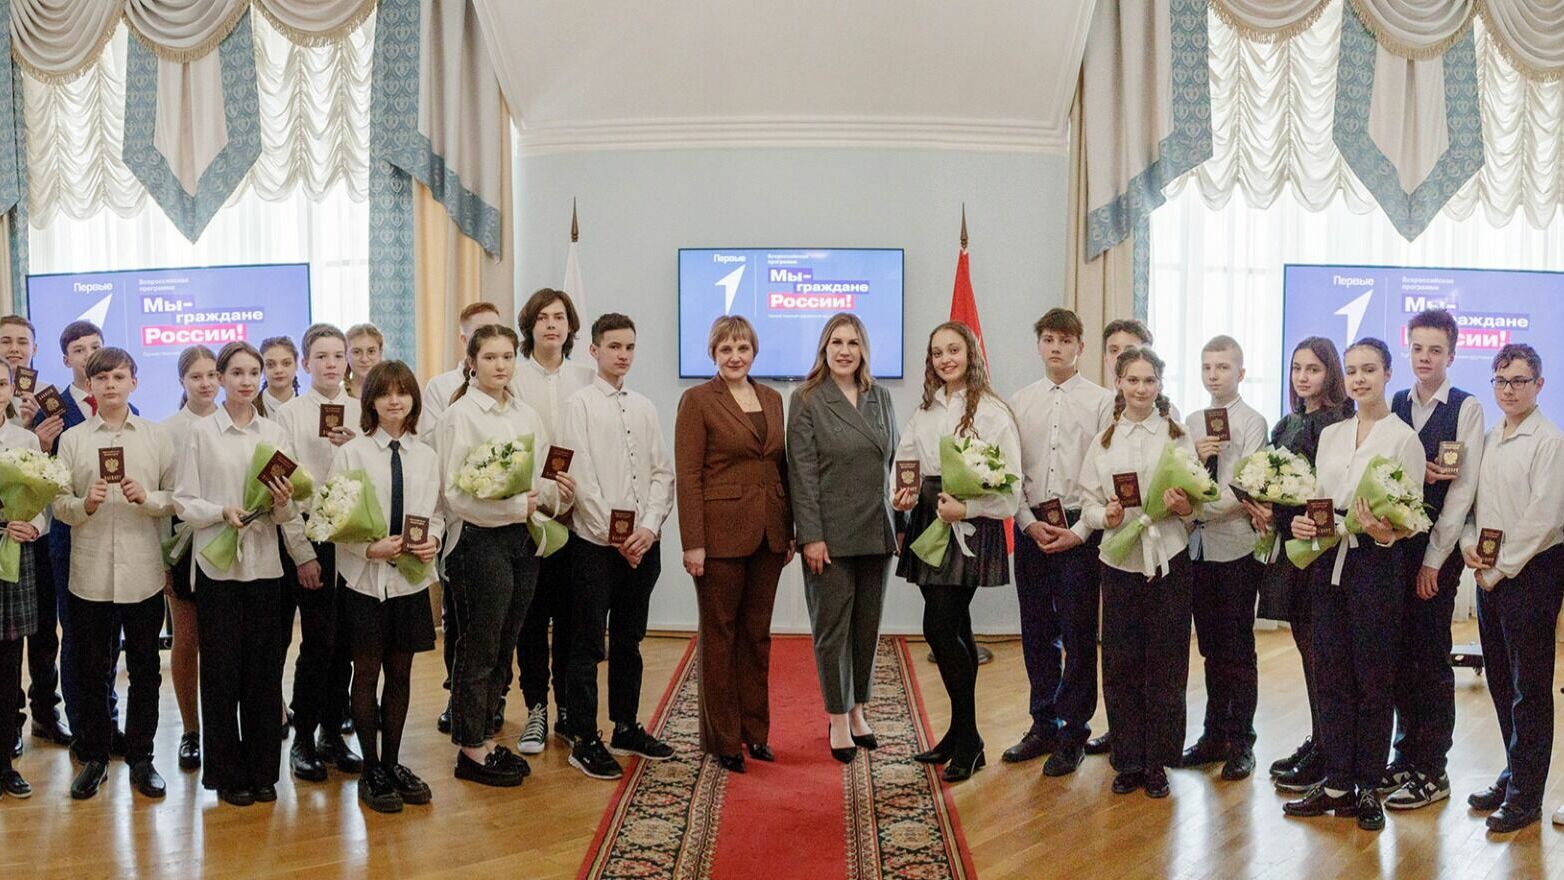 Губернаторы вручили паспорта школьникам в рамках акции «Мы - граждане России!»